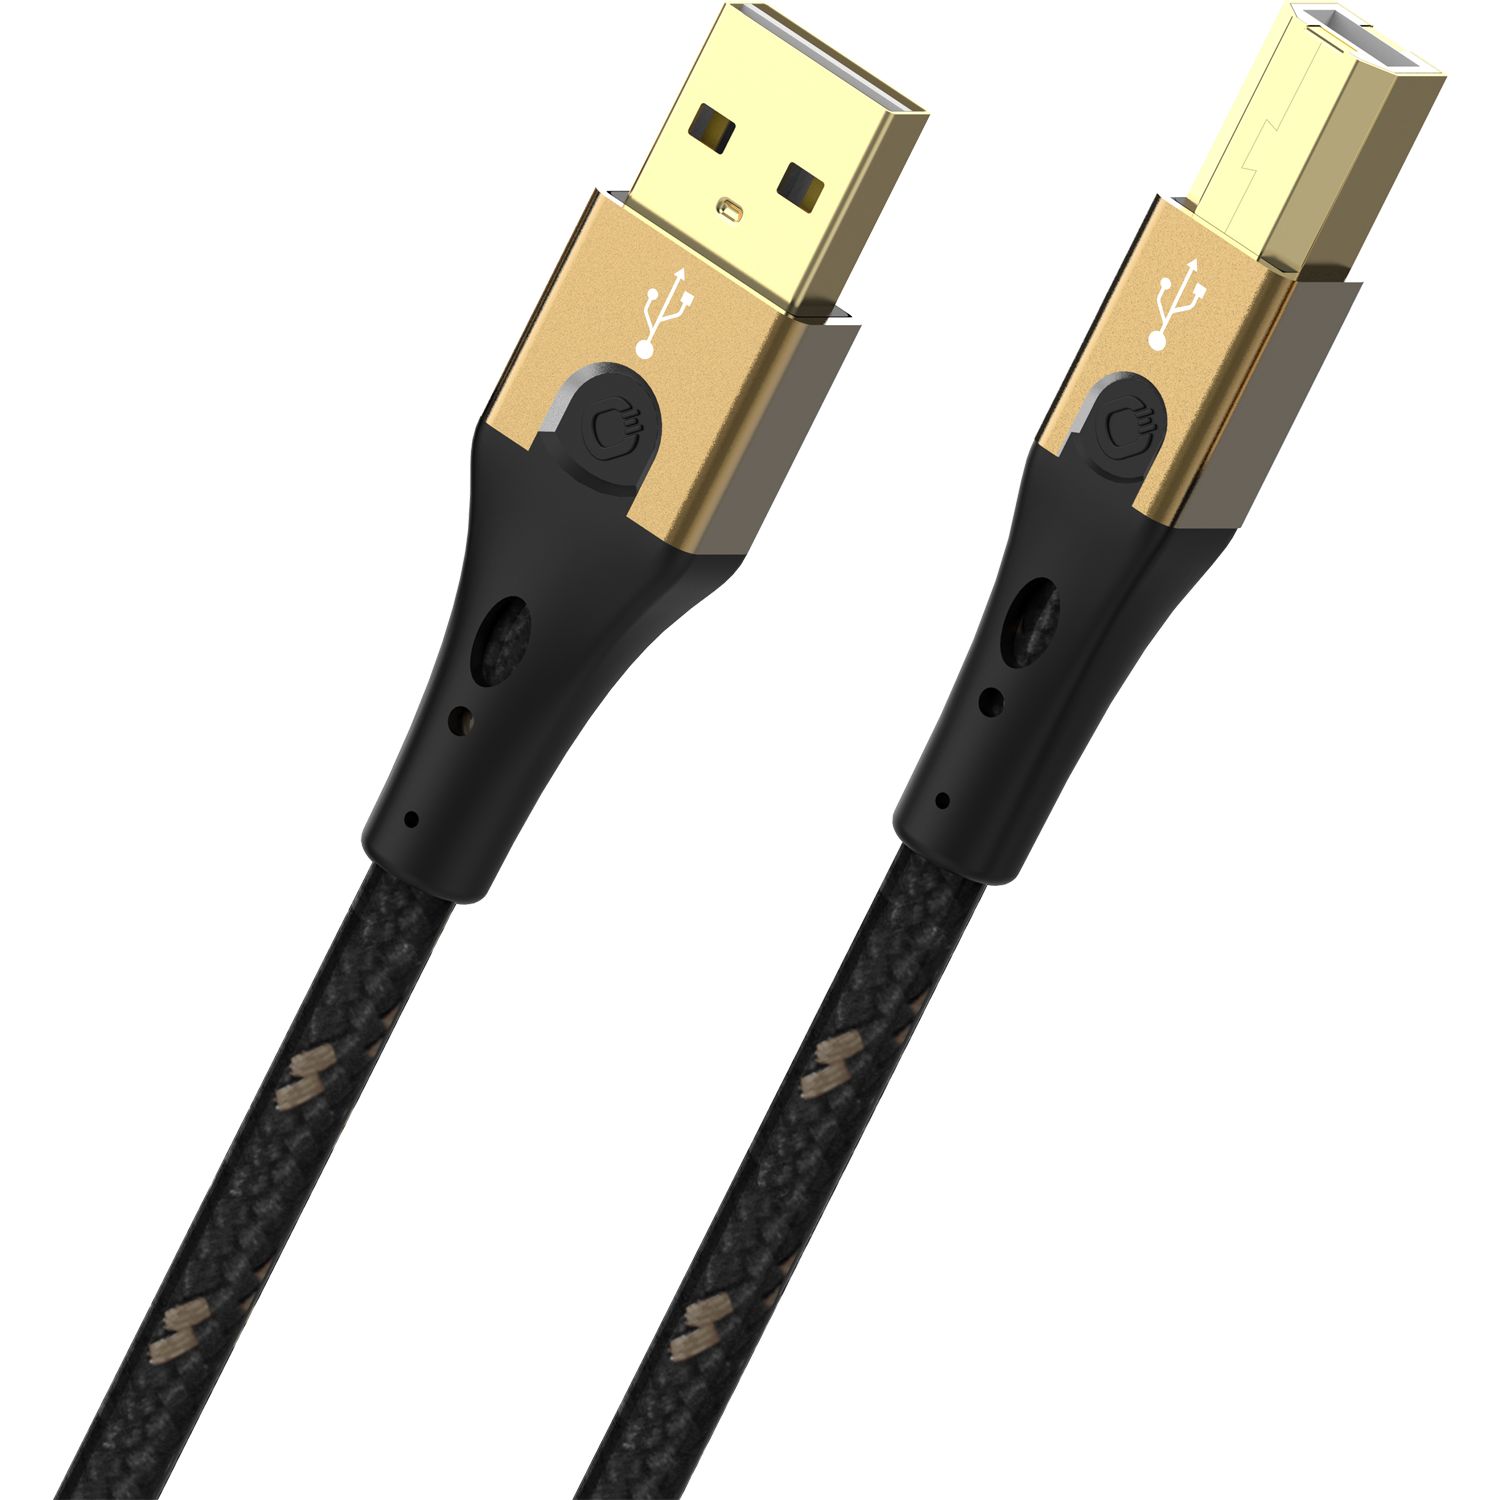 USB Primus B